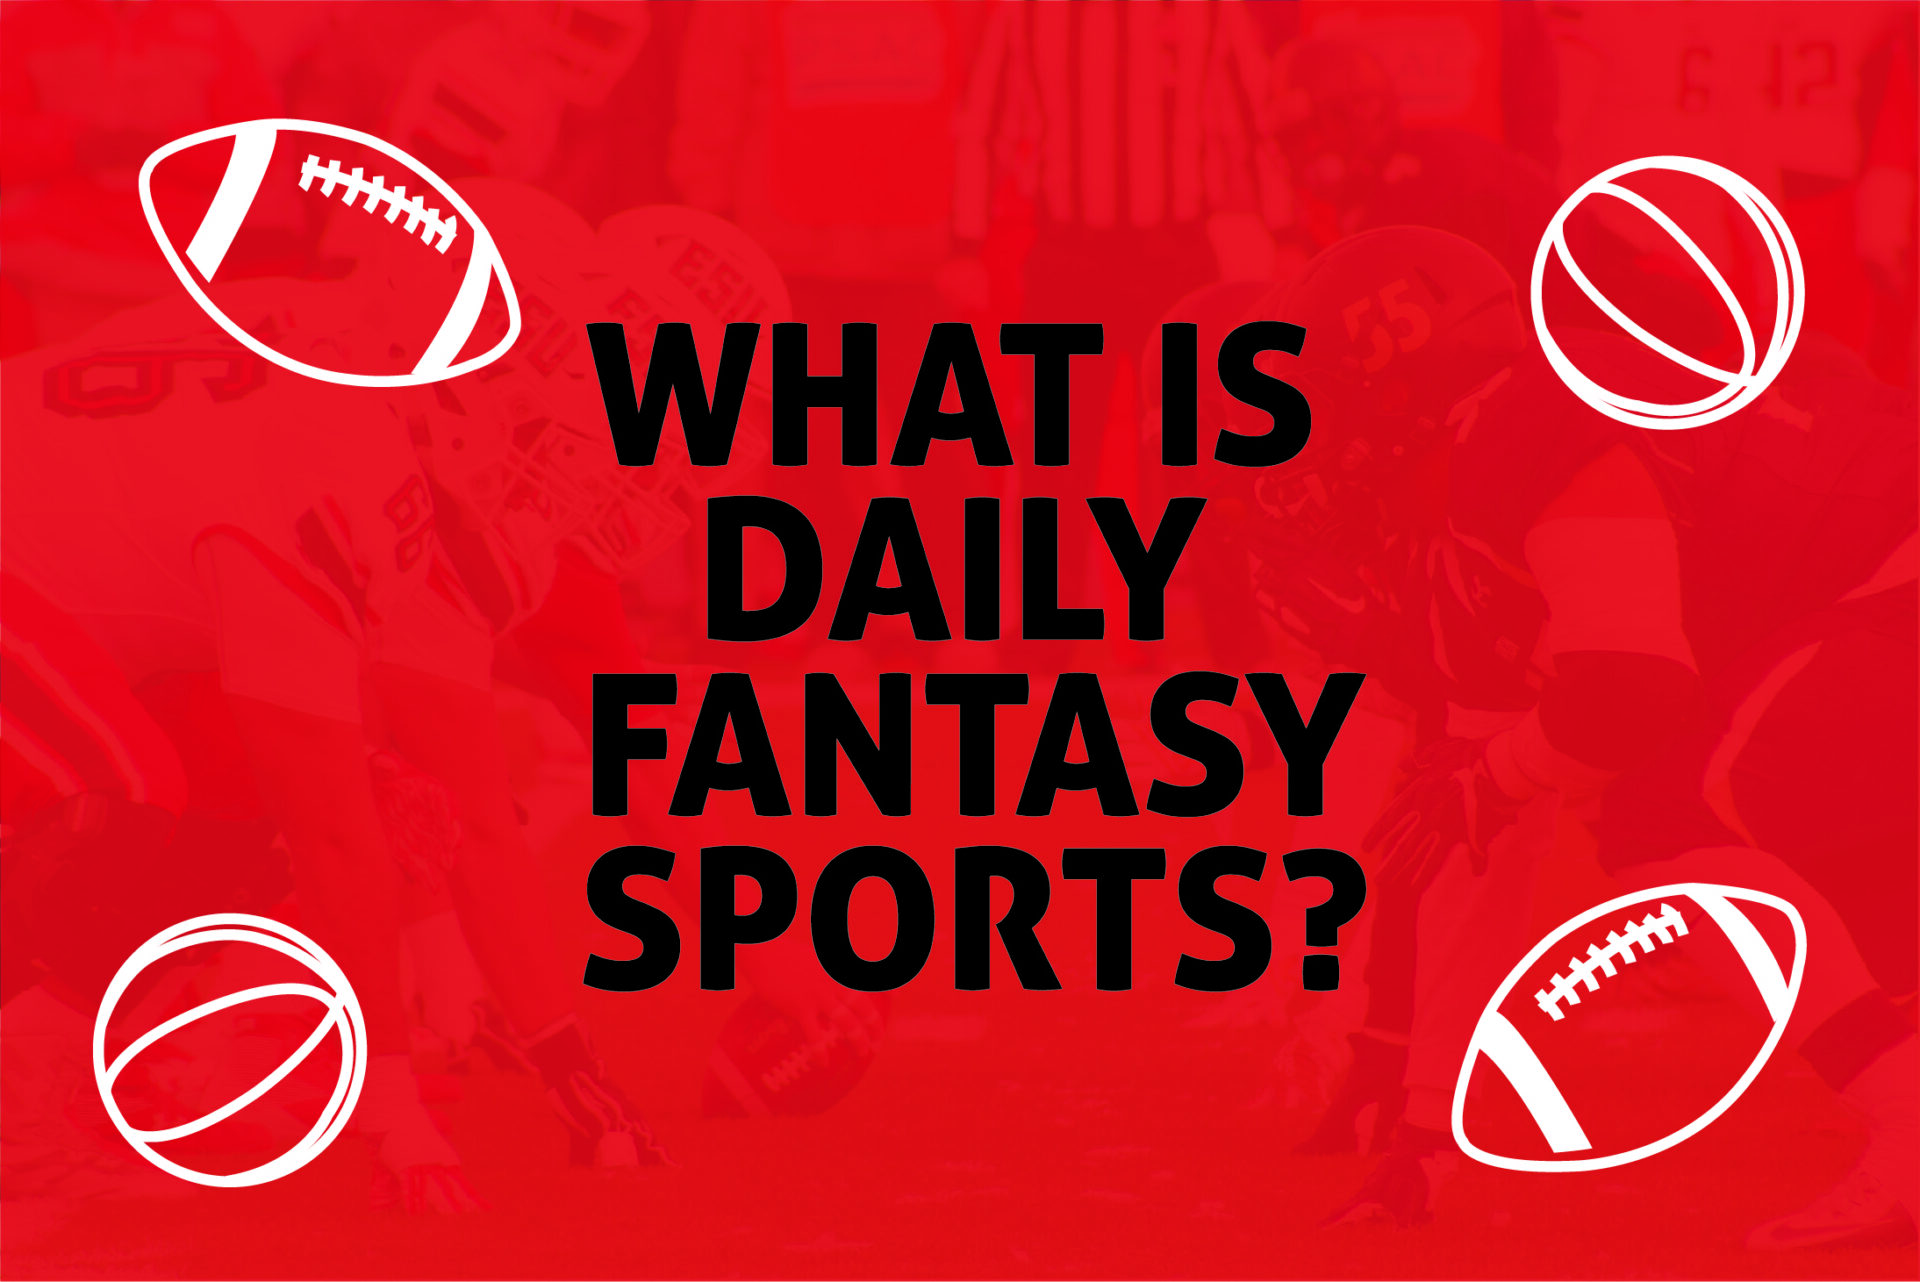 Daily Fantasy Sports